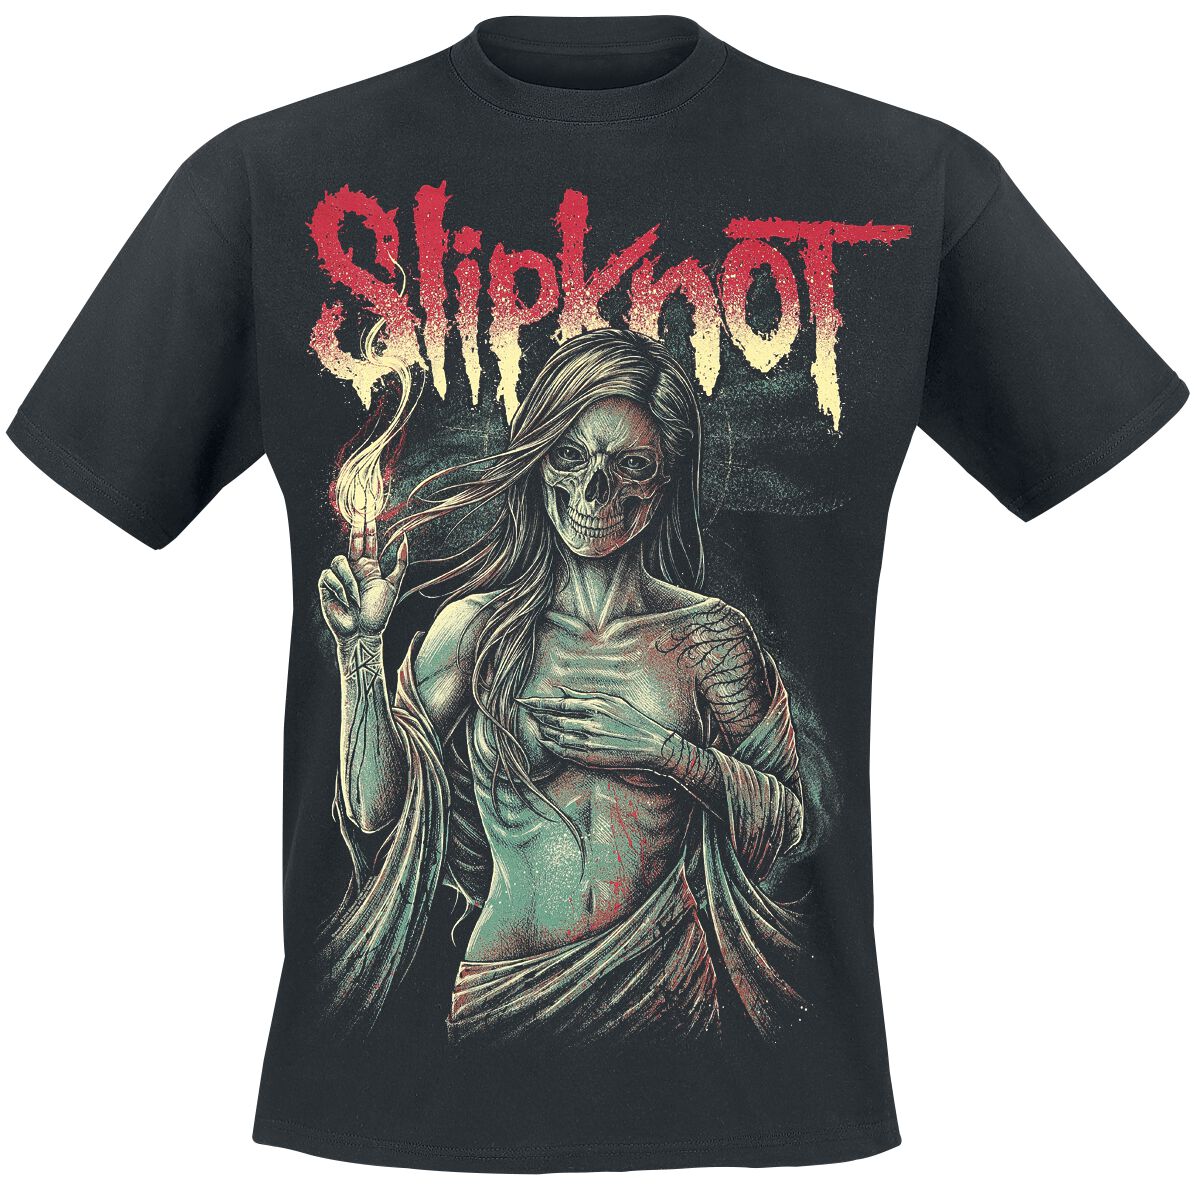 Slipknot T-Shirt - Burn Me Away - S bis 4XL - für Männer - Größe 4XL - schwarz  - Lizenziertes Merchandise!